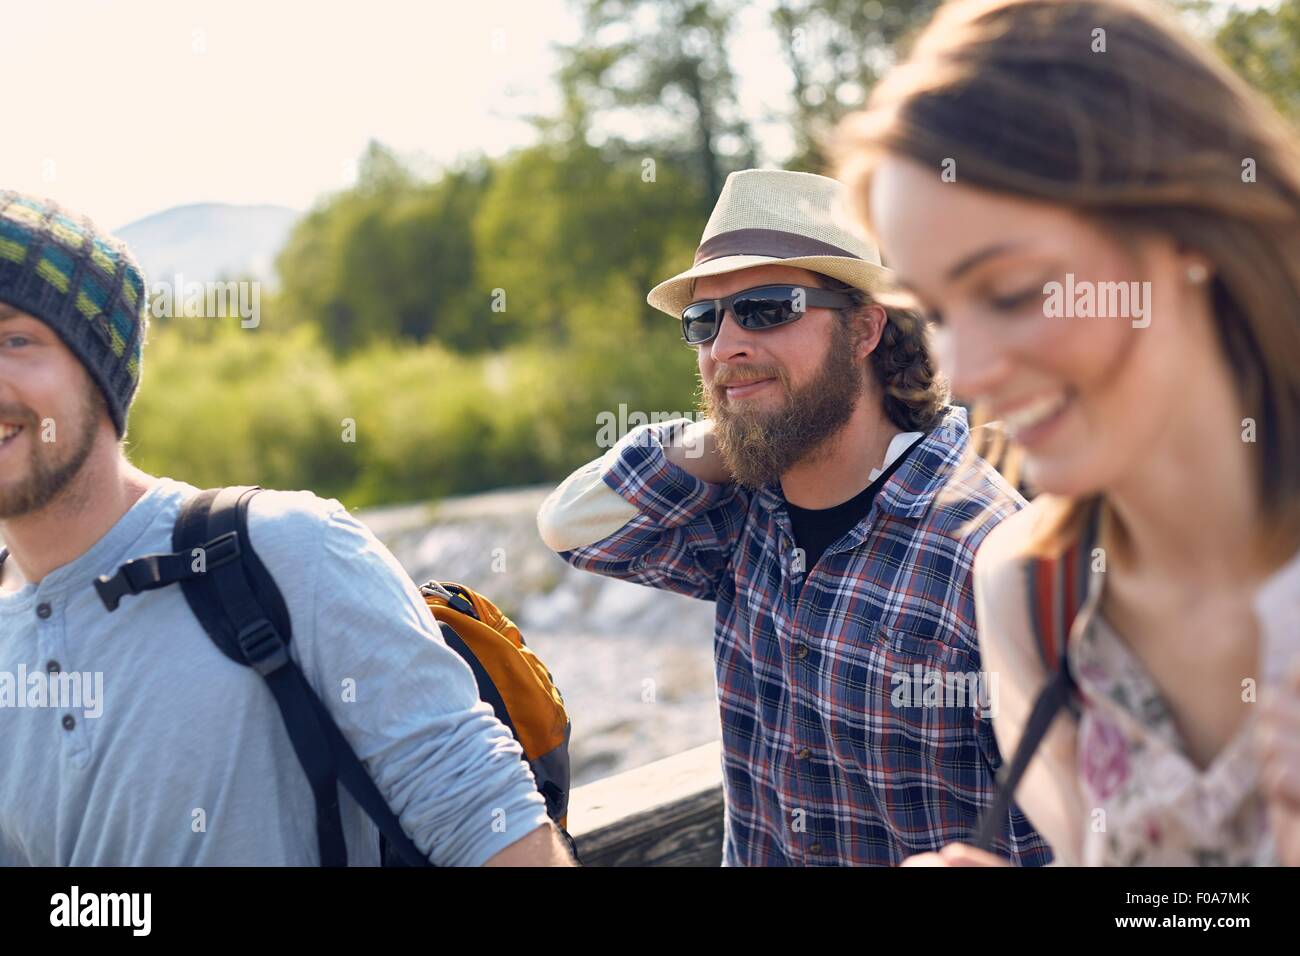 Drei Personen zusammen spazieren tragen Rucksäcke, Lächeln Stockfoto